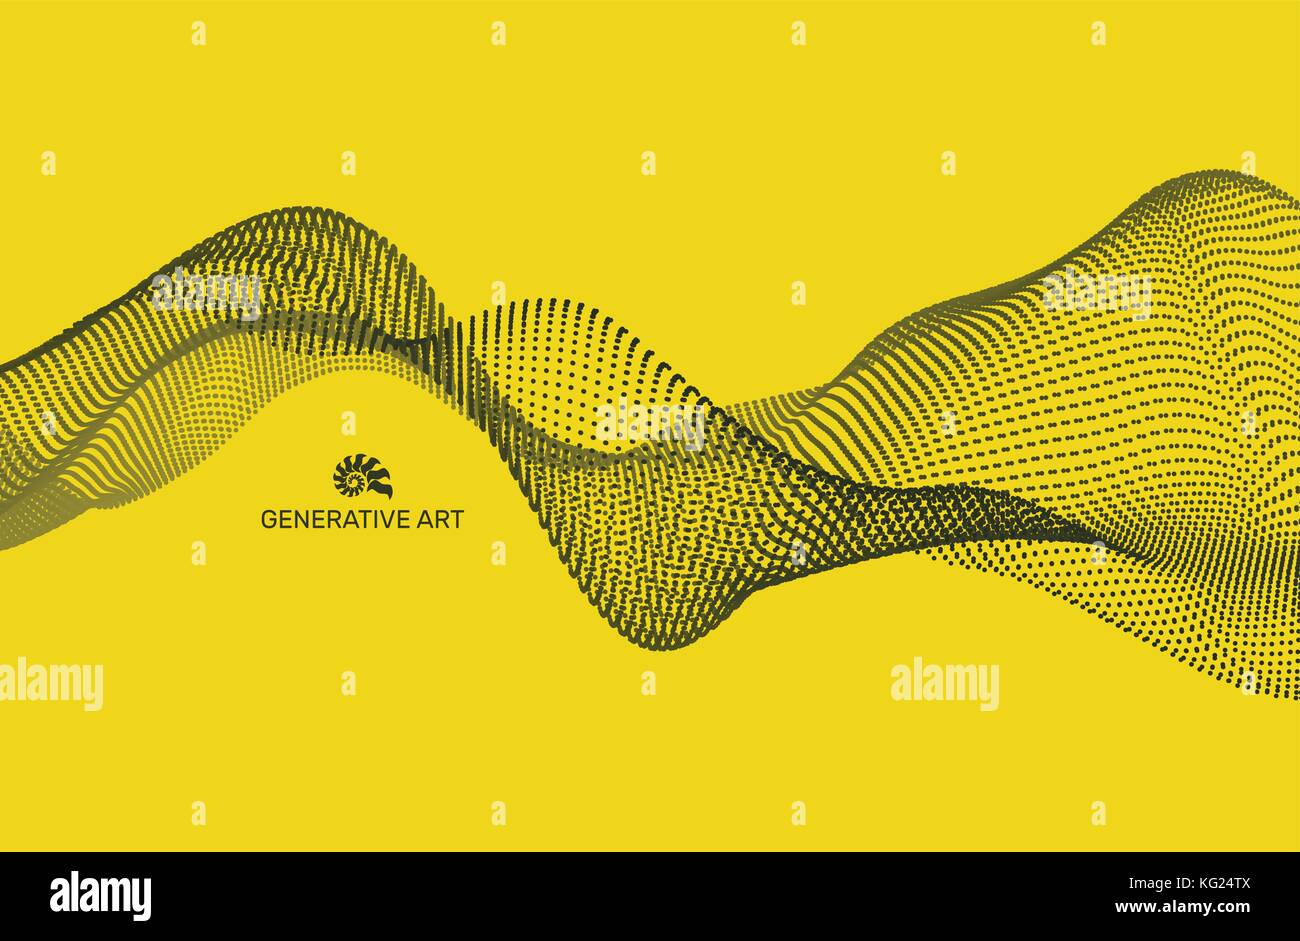 Sfondo di onda. griglia ripple abstract illustrazione vettoriale. La tecnologia 3d stile. illustrazione con punti. progettazione di rete con particella. Illustrazione Vettoriale